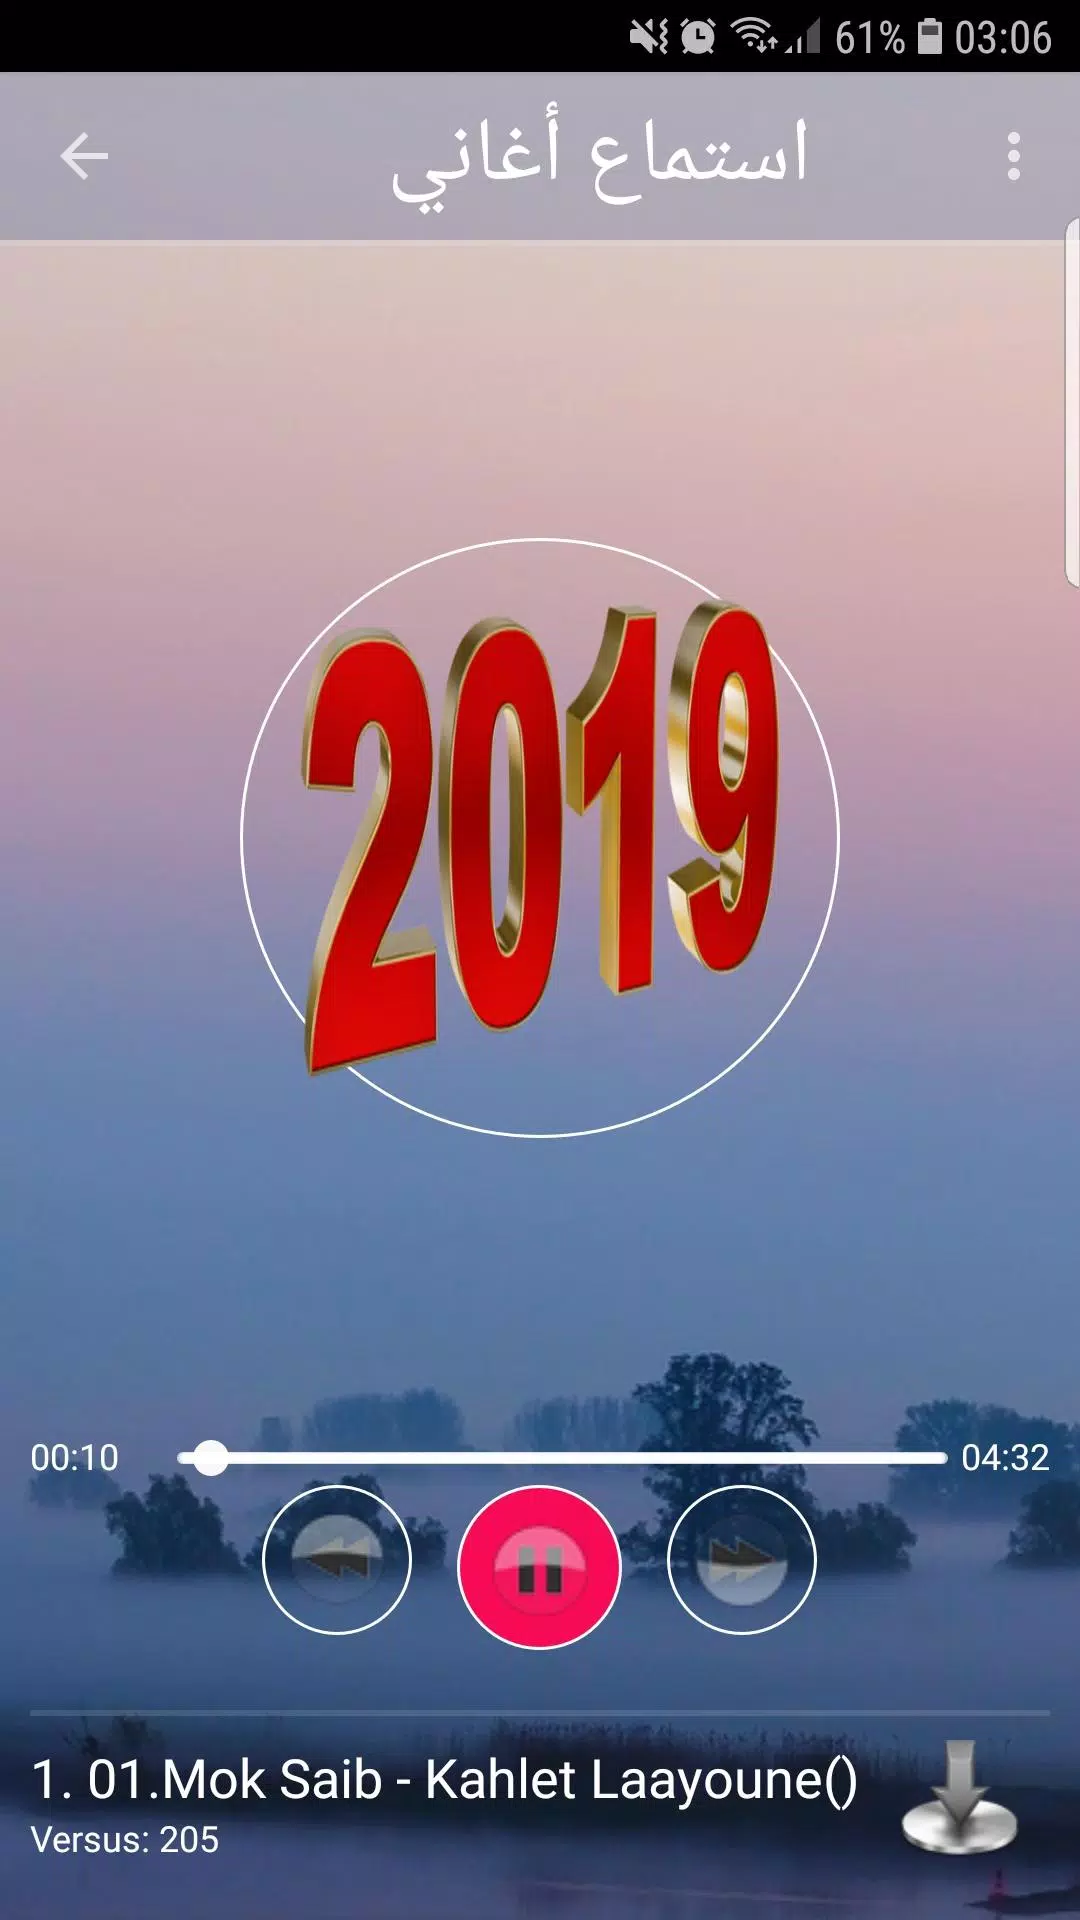 استماع موك صايب 2019 بدون نت-Mok Saib mp3 song APK for Android Download